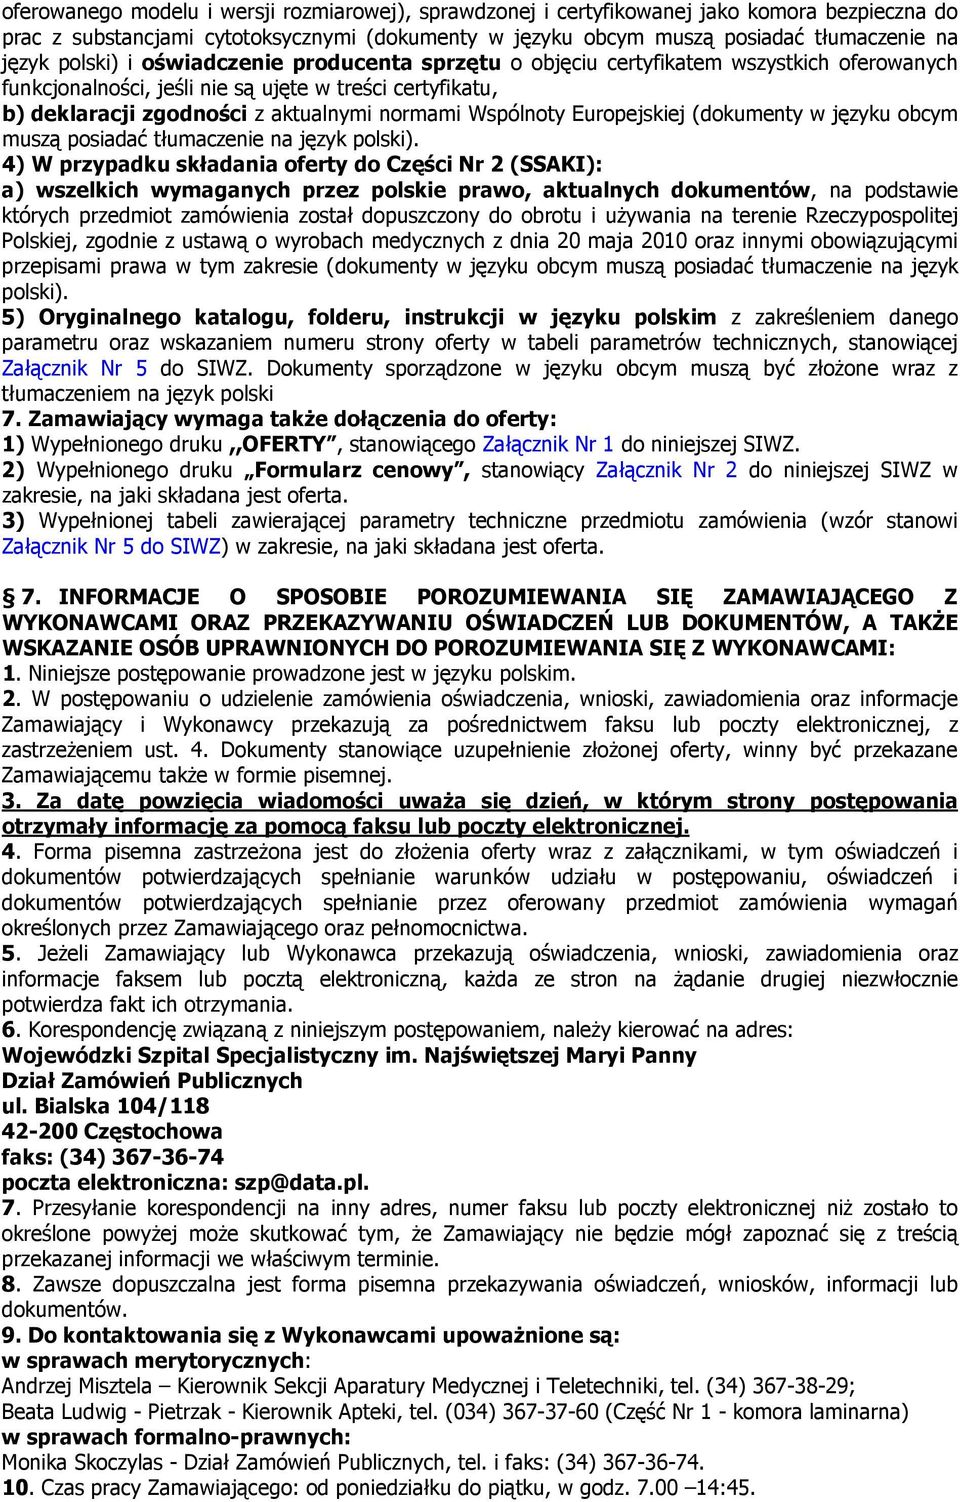 Wspólnoty Europejskiej (dokumenty w języku obcym muszą posiadać tłumaczenie na język polski).